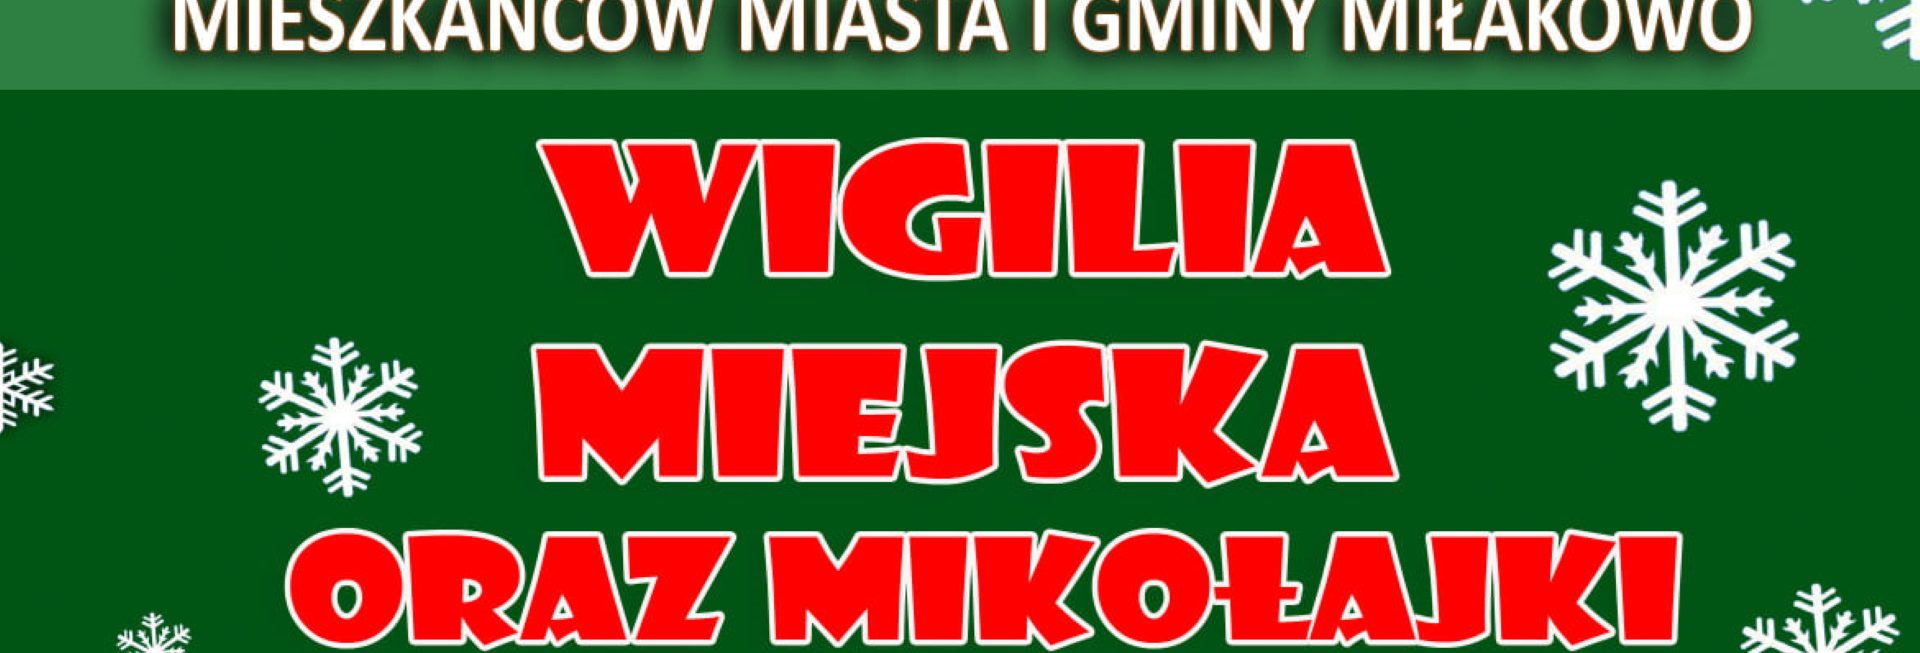 Plakat graficzny zapraszający do Miłakowa na cykliczną imprezę Wigilia Miejska oraz Mikołajki - Miłakowo 2021.